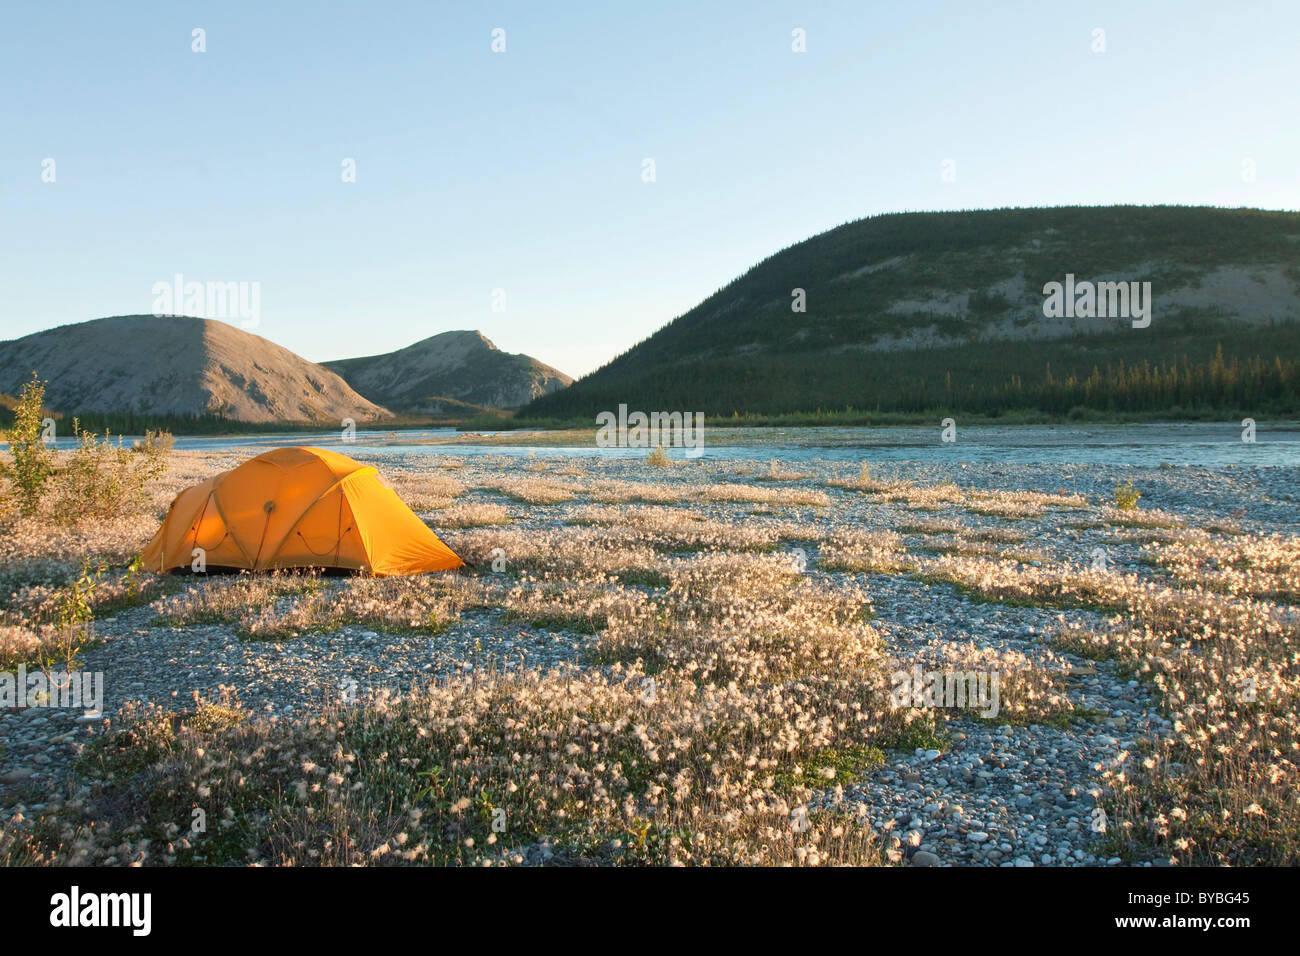 Spedizione tenda, tundra artica, cotone erba, camping, Wind River e Mackenzie montagne dietro, Yukon Territory, Canada Foto Stock